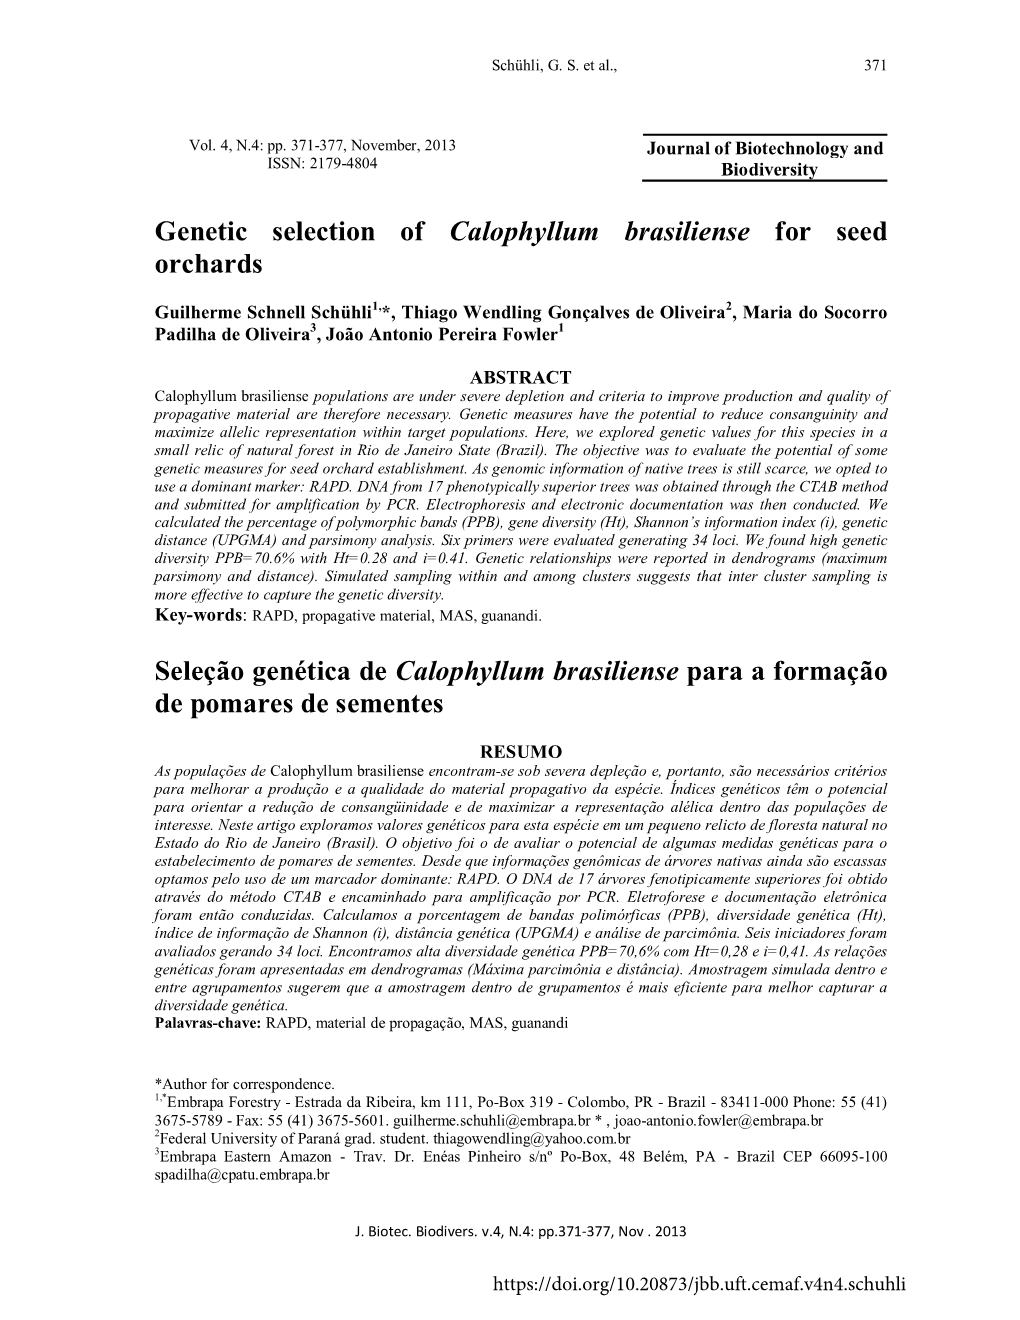 Seleção Genética De Calophyllum Brasiliense Para a Formação De Pomares De Sementes